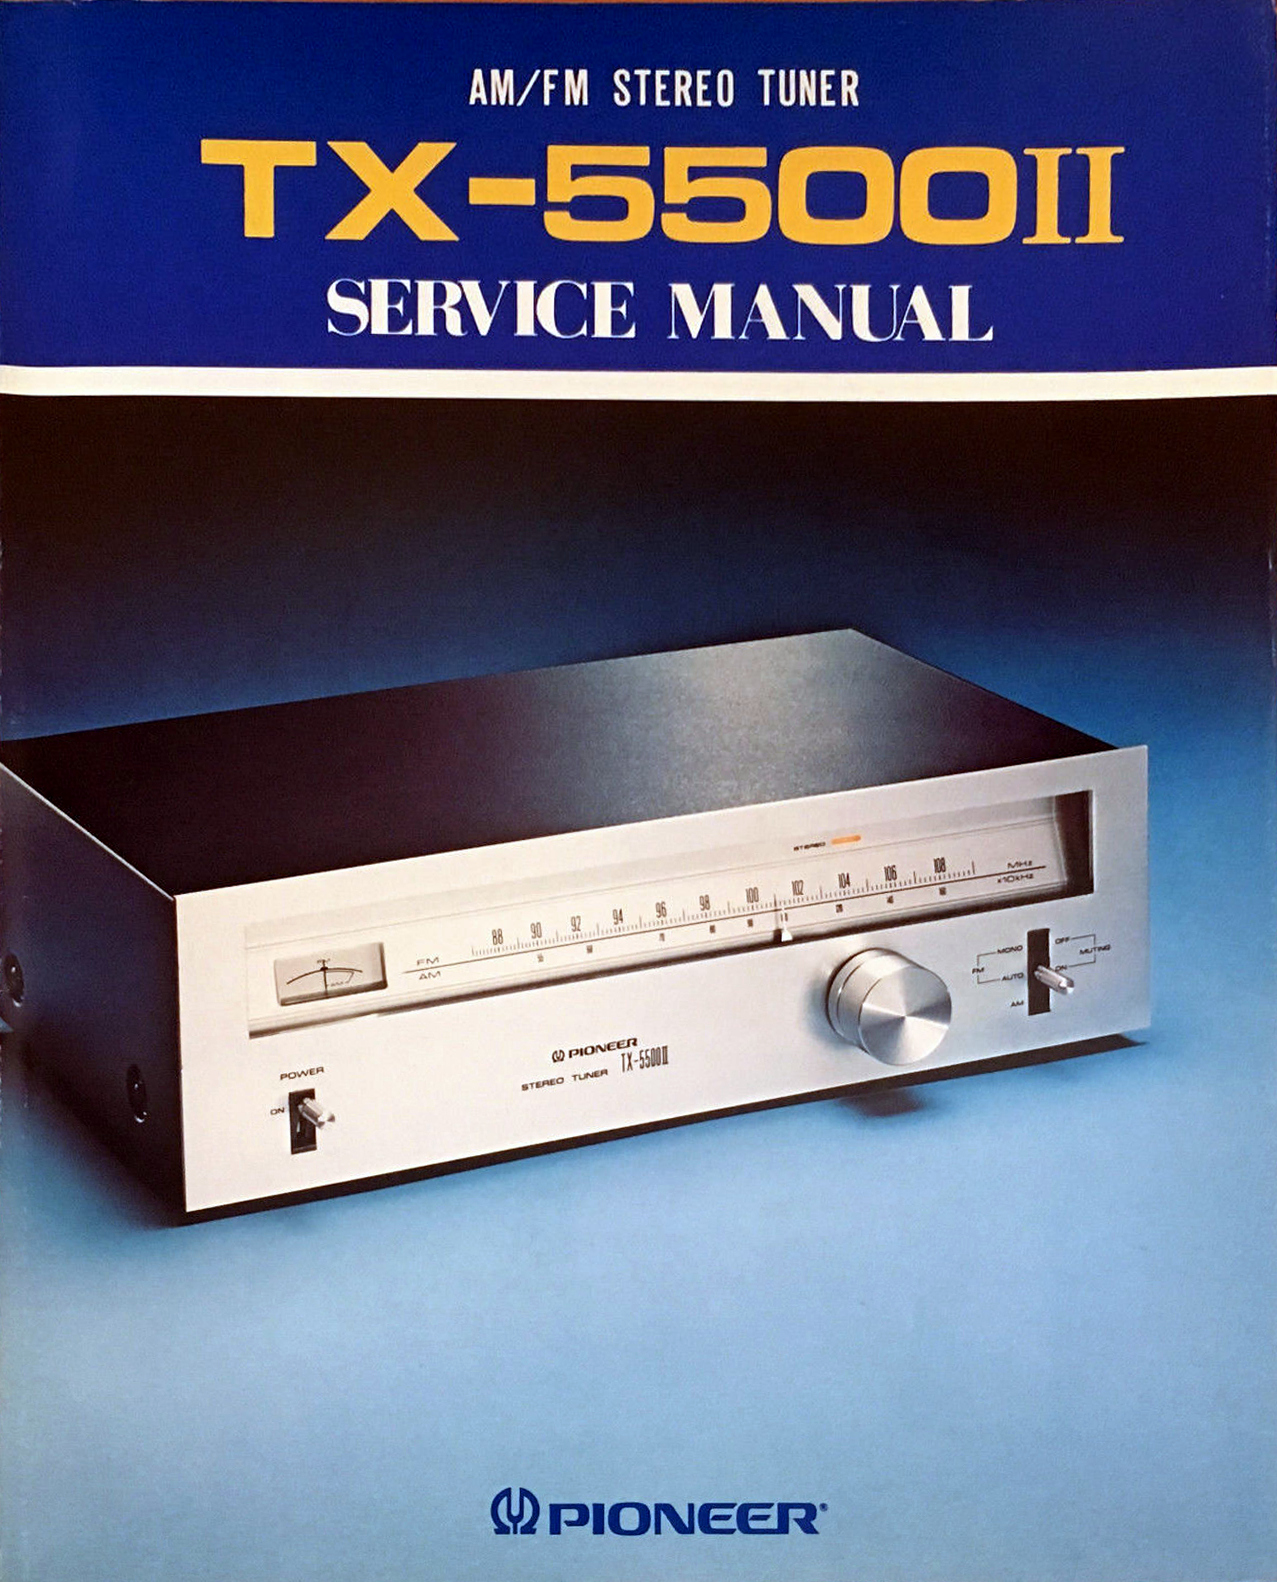 Pioneer TX-5500 II-Manual-1.jpg